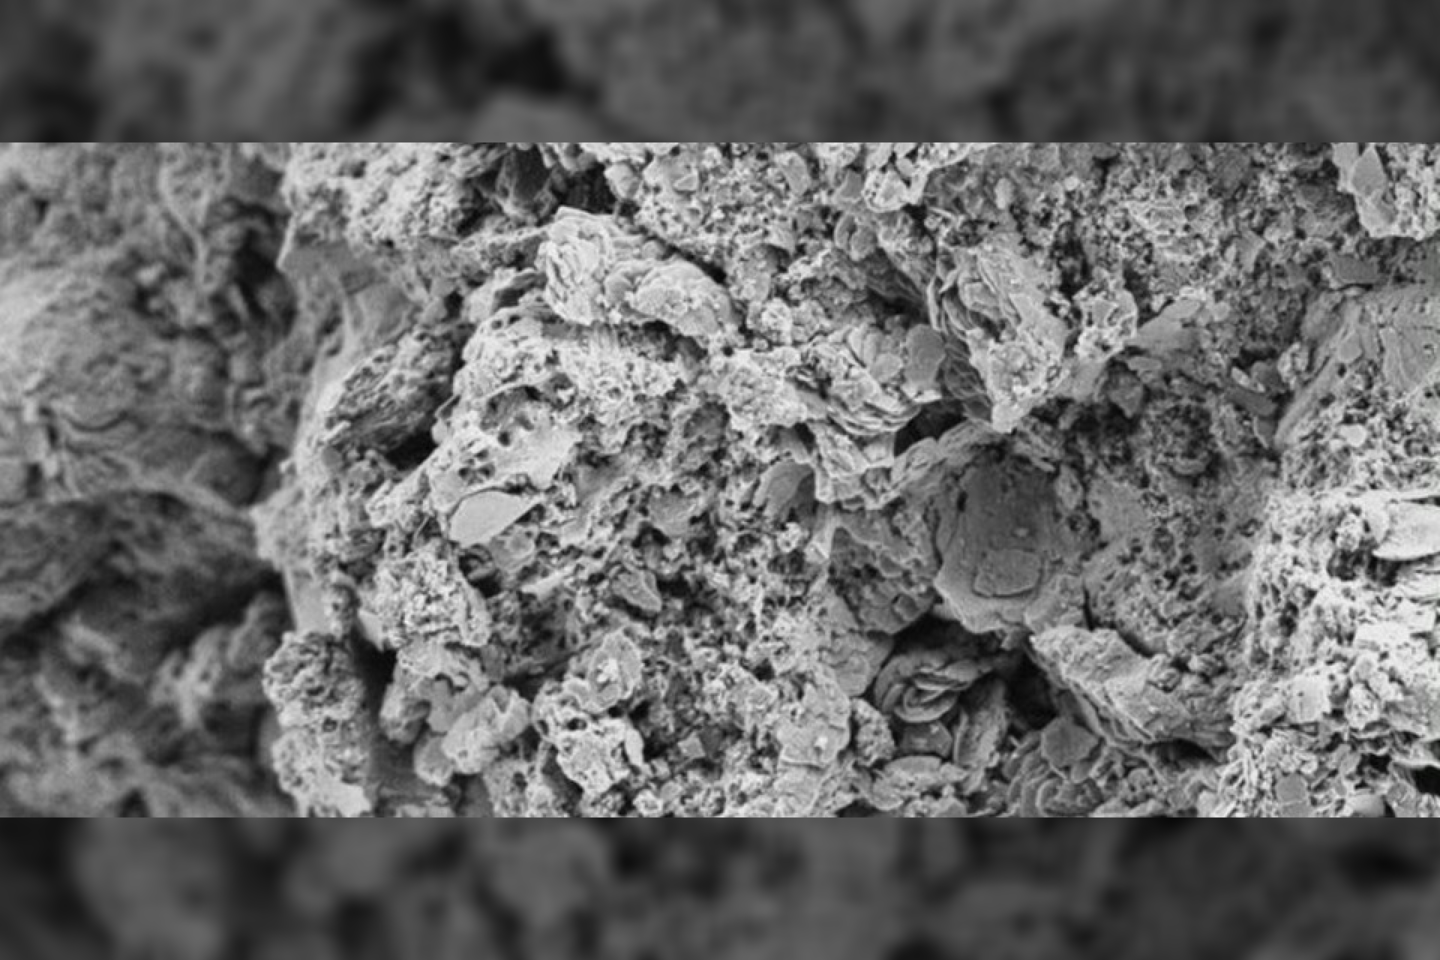  10 000 kartų priartinimas atskleidžia lapus primenančias vidines meteorito struktūras.<br> Loughburougho universiteto nuotr.